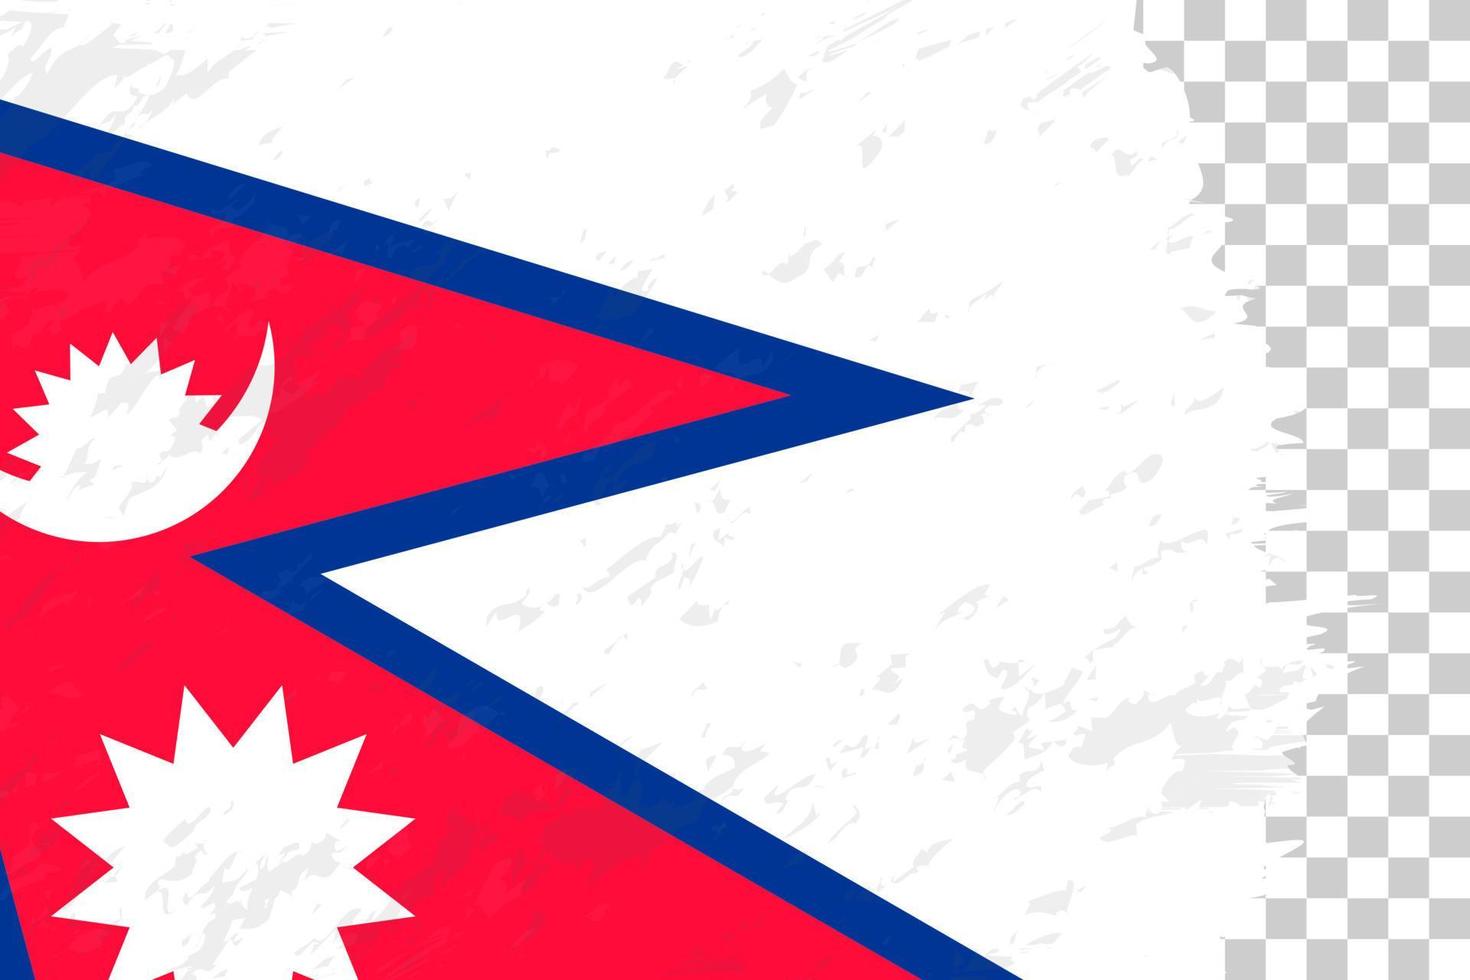 grunge abstrait horizontal brossé drapeau du népal sur une grille transparente. vecteur